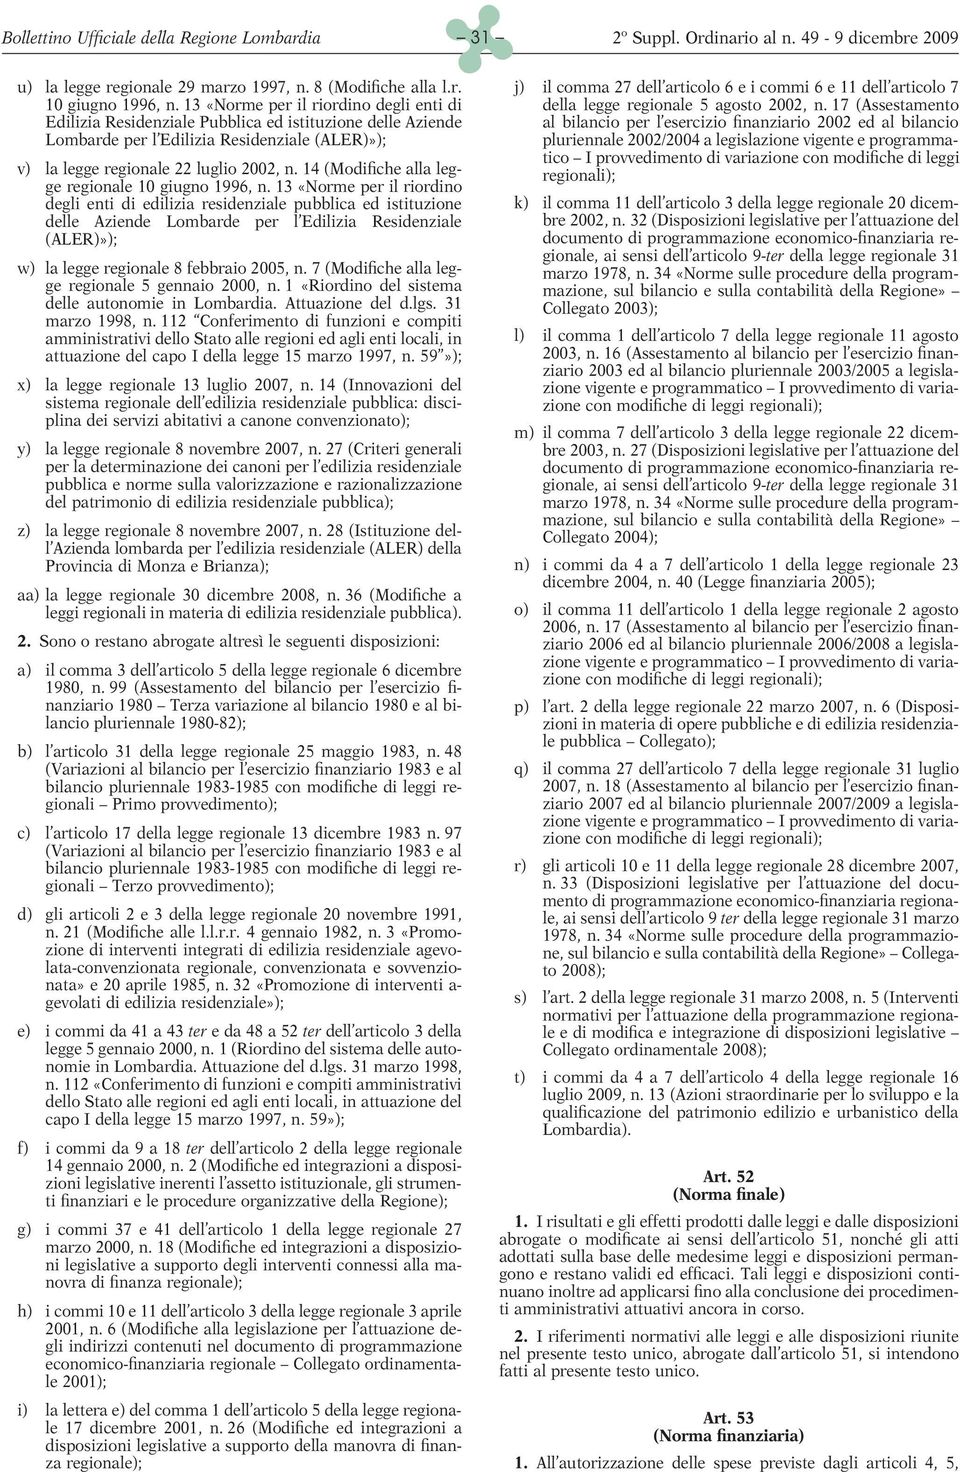 14 (Modifiche alla legge regionale 10 giugno 1996, n.